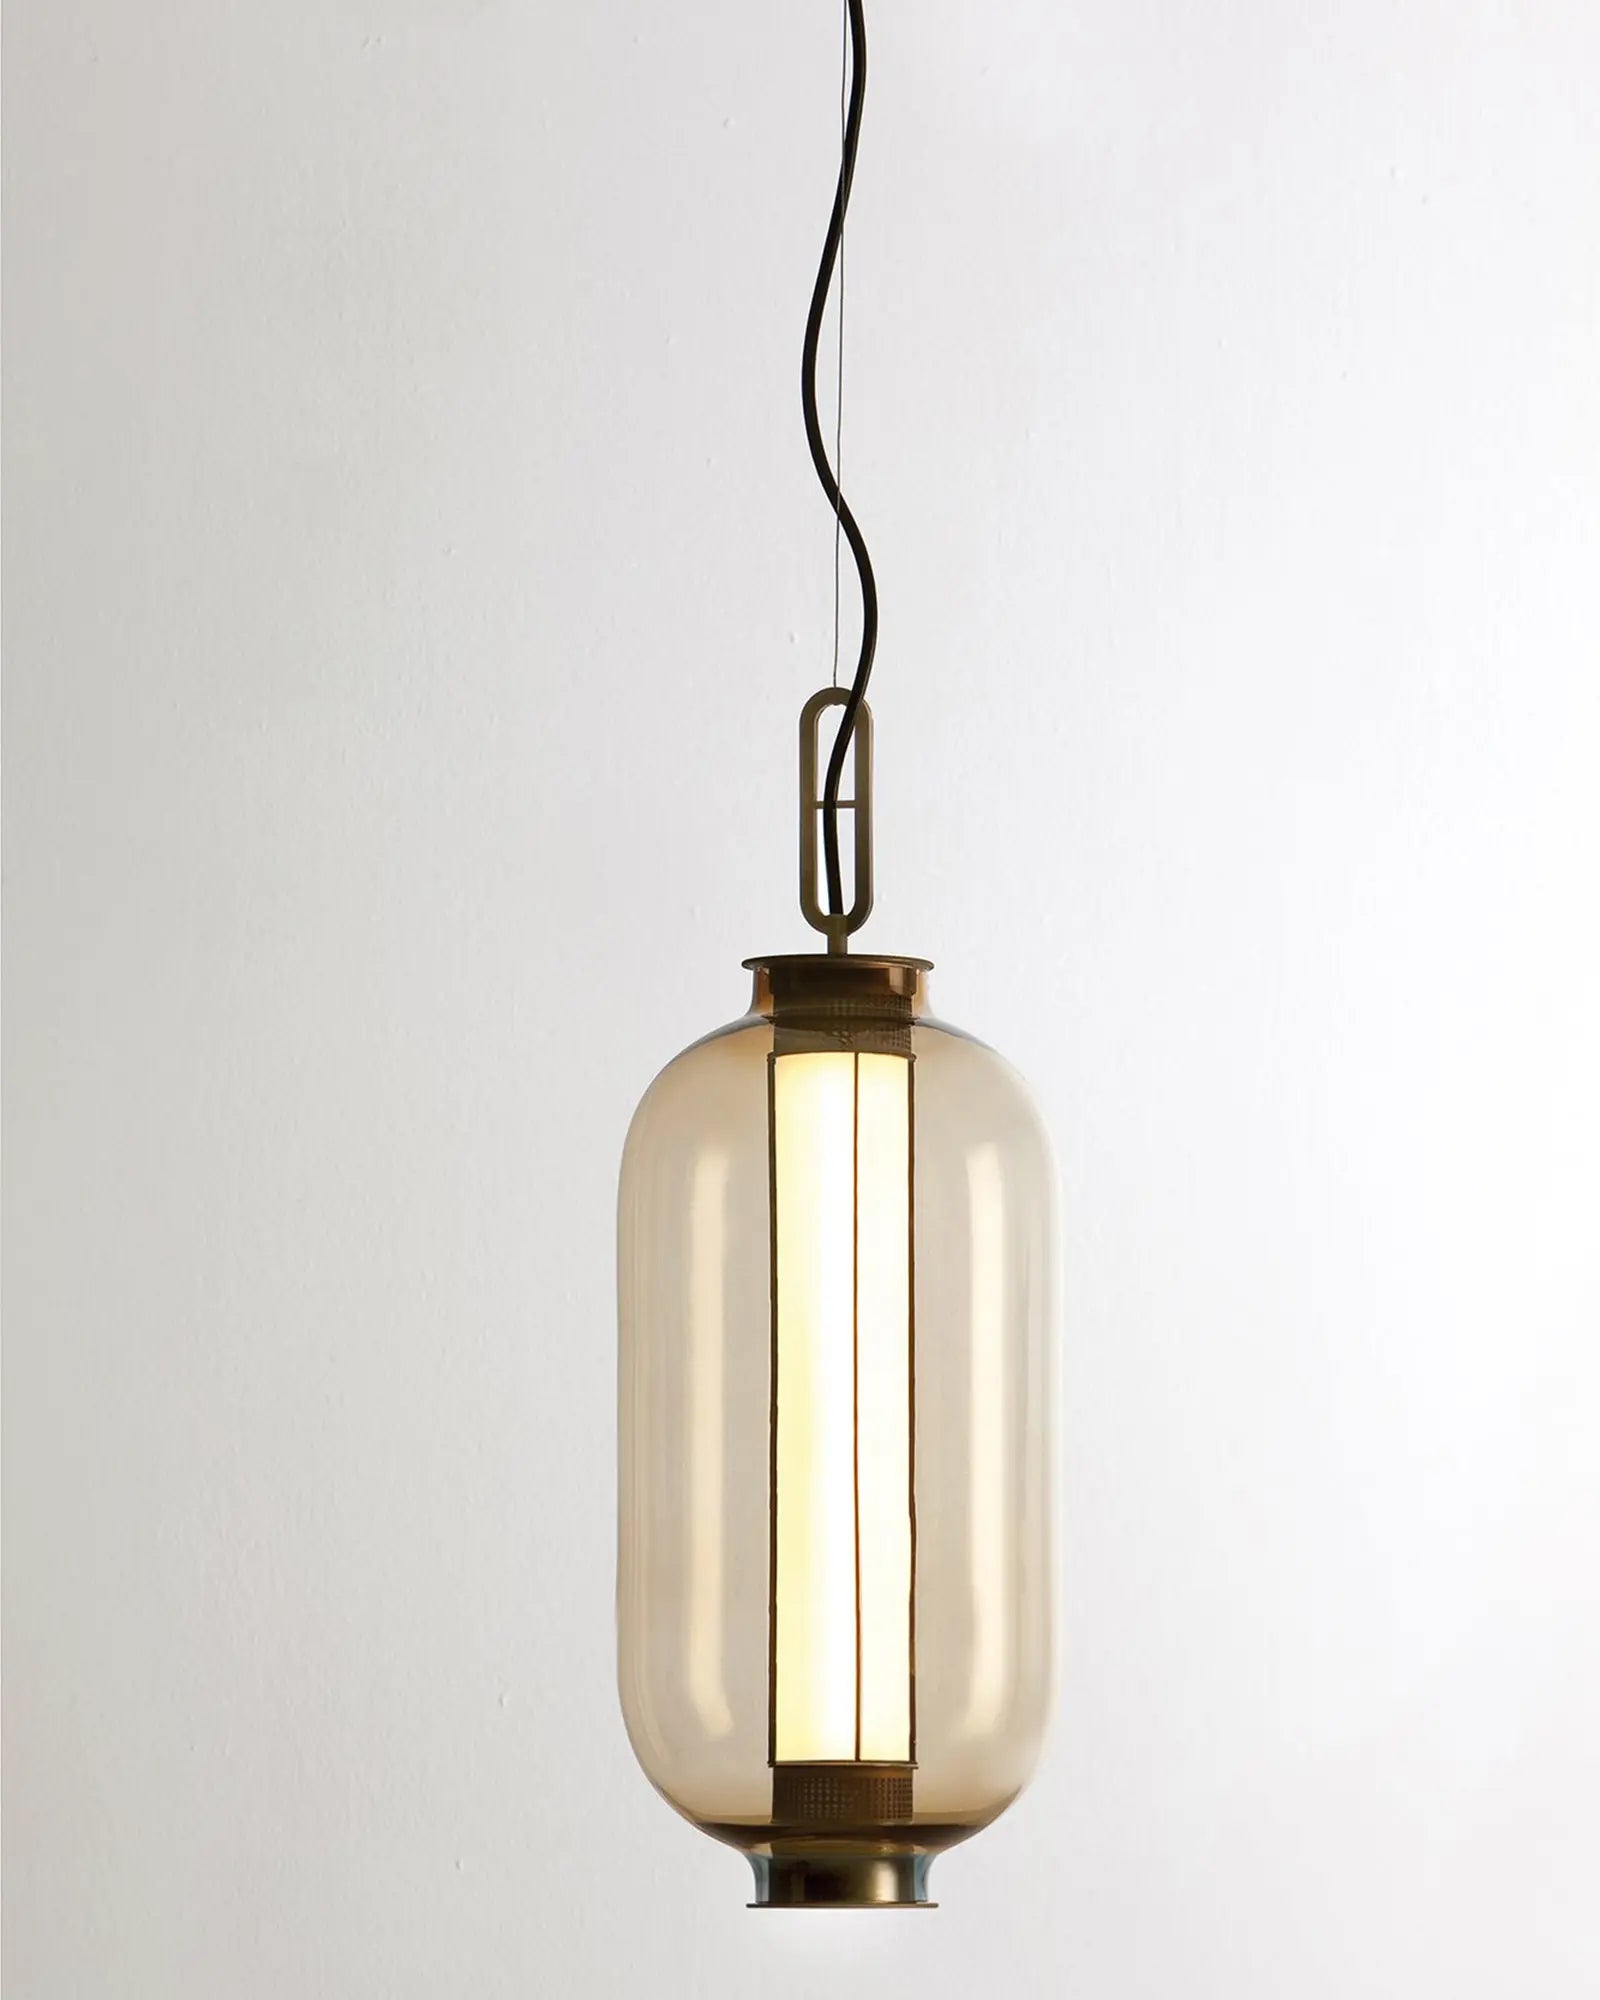 Bai Ba Ba tall bronze and blown glass Chinese lantern style pendant light amber glass